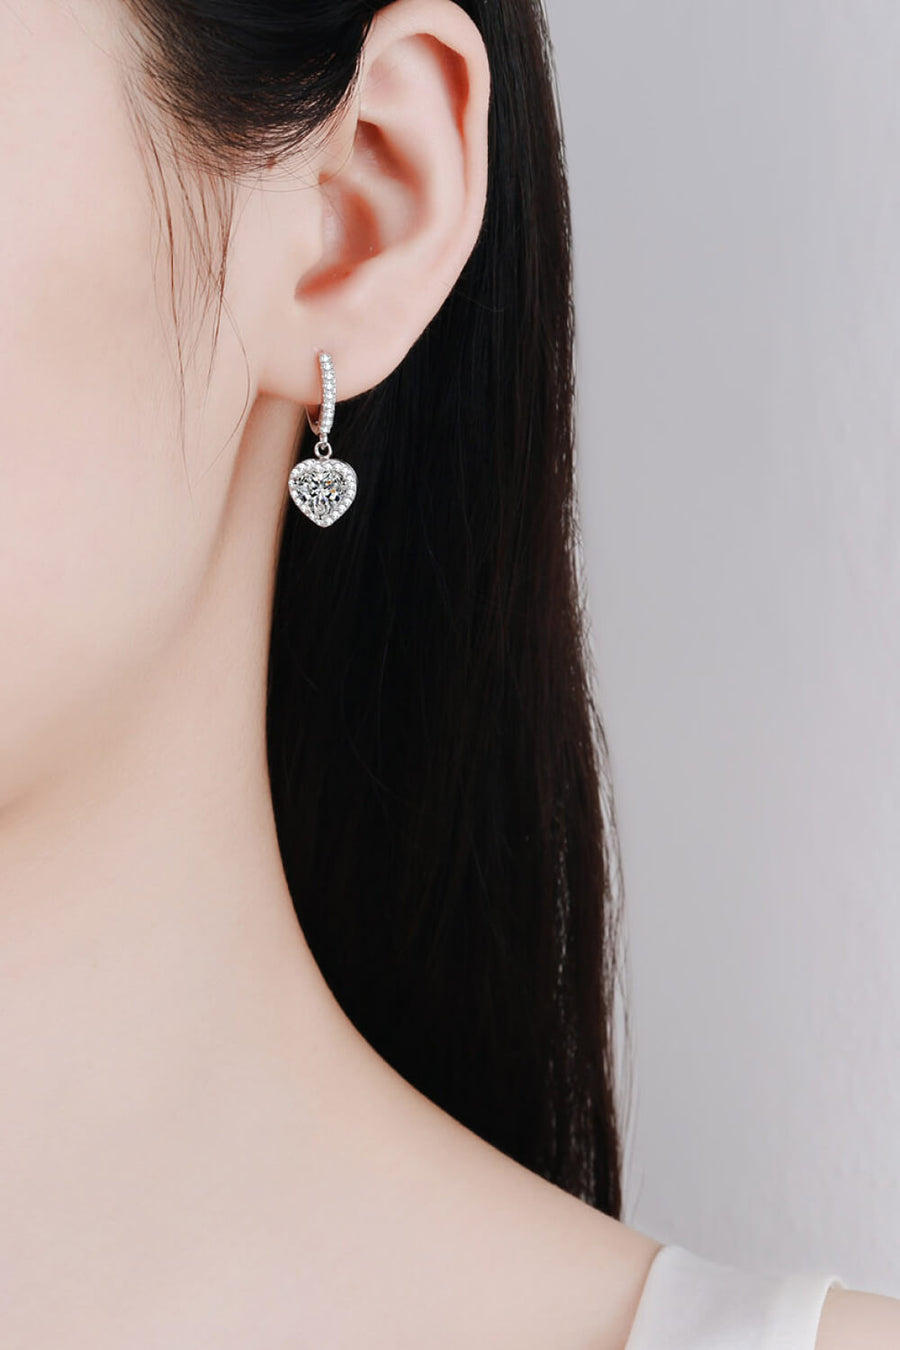 1# BEST Diamond Earrings Jewelry Gifts for Women | #1 Best Most Top Trendy Trending 2 Carat Heart Diamond Drop Earrings Gift for Women, Mother, Ladies | MASON New York